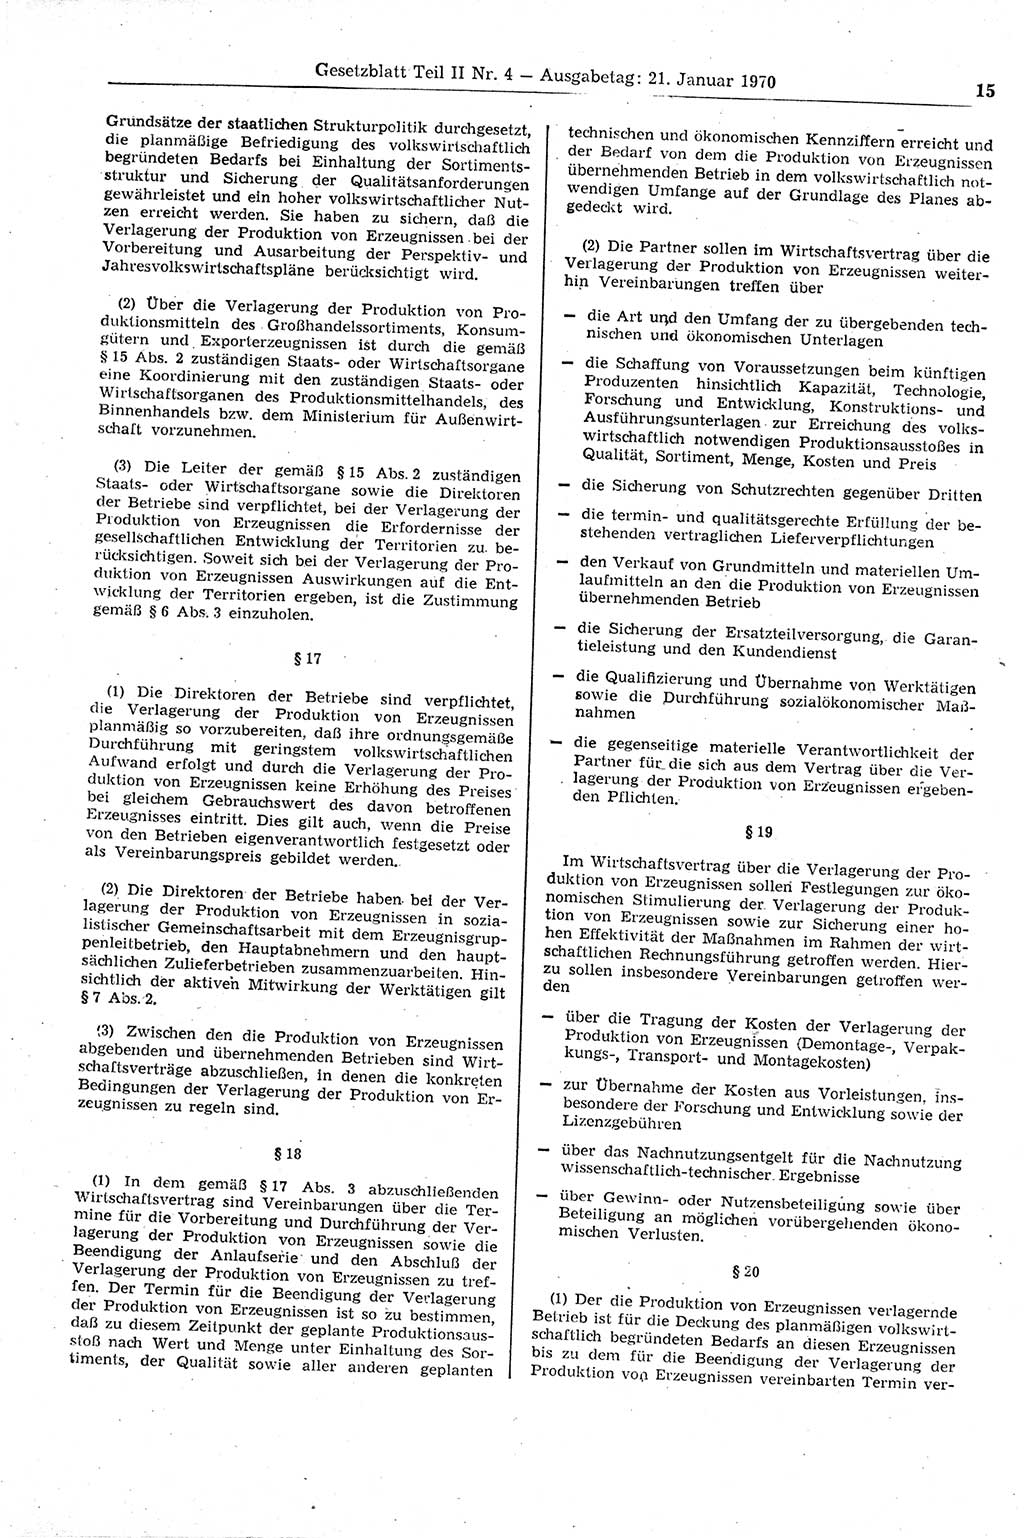 Gesetzblatt (GBl.) der Deutschen Demokratischen Republik (DDR) Teil ⅠⅠ 1970, Seite 15 (GBl. DDR ⅠⅠ 1970, S. 15)